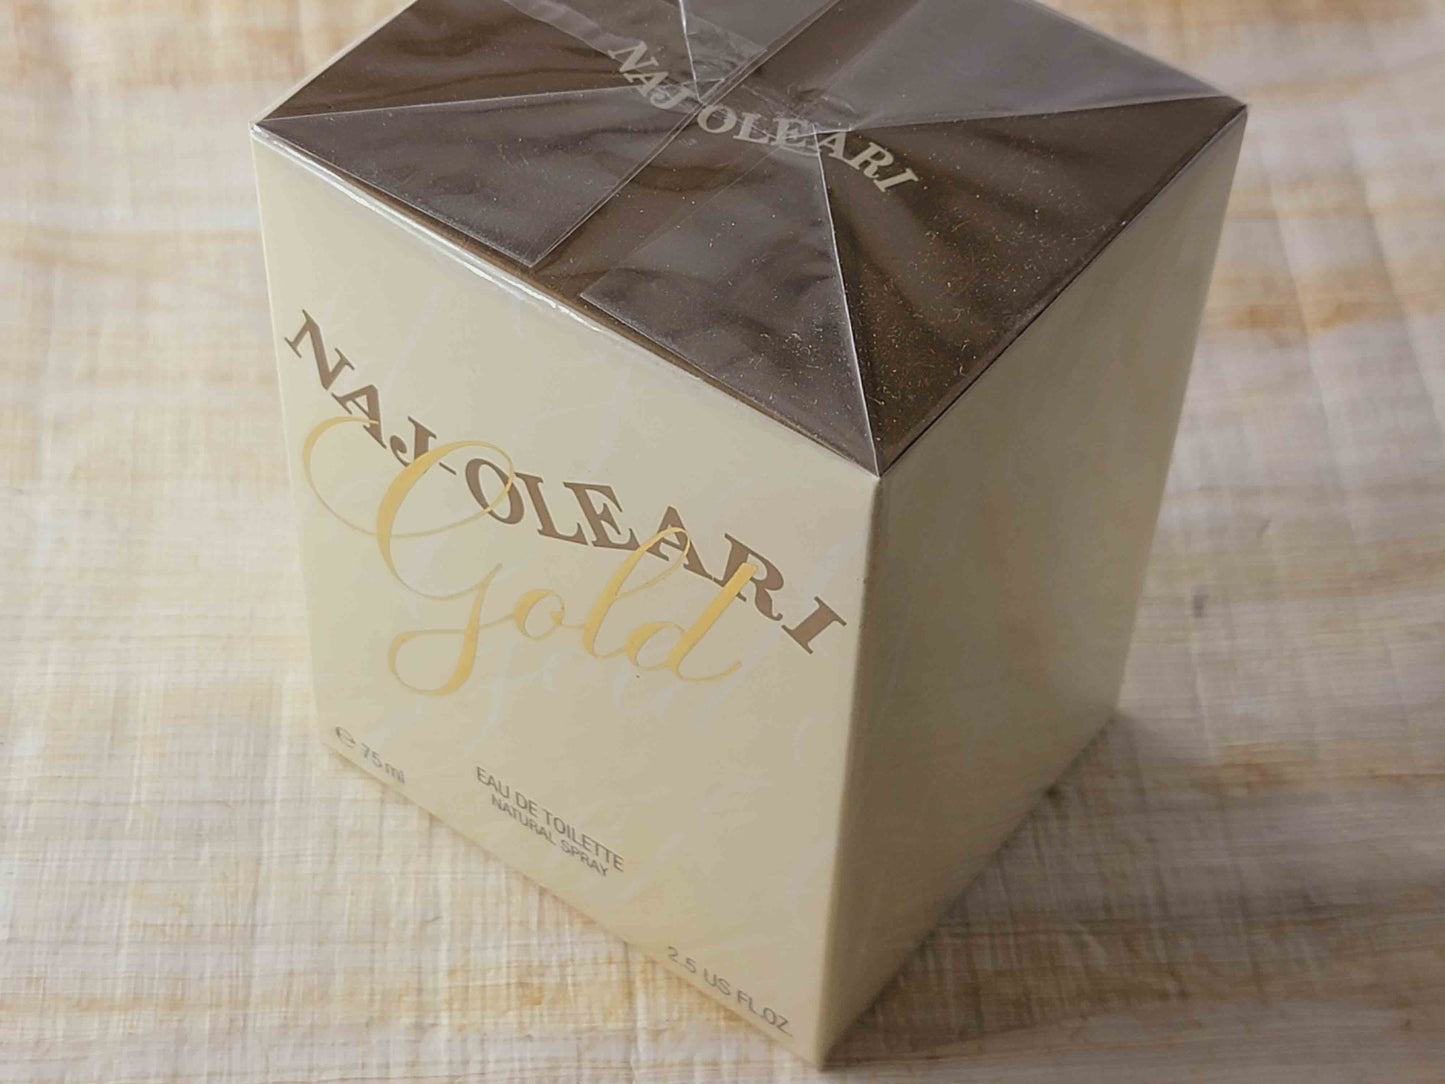 Naj-Oleari Gold for women EDT Spray 75 ml 2.5 oz Or 50 ml 1.7 oz, Vintage, Rare, Sealed